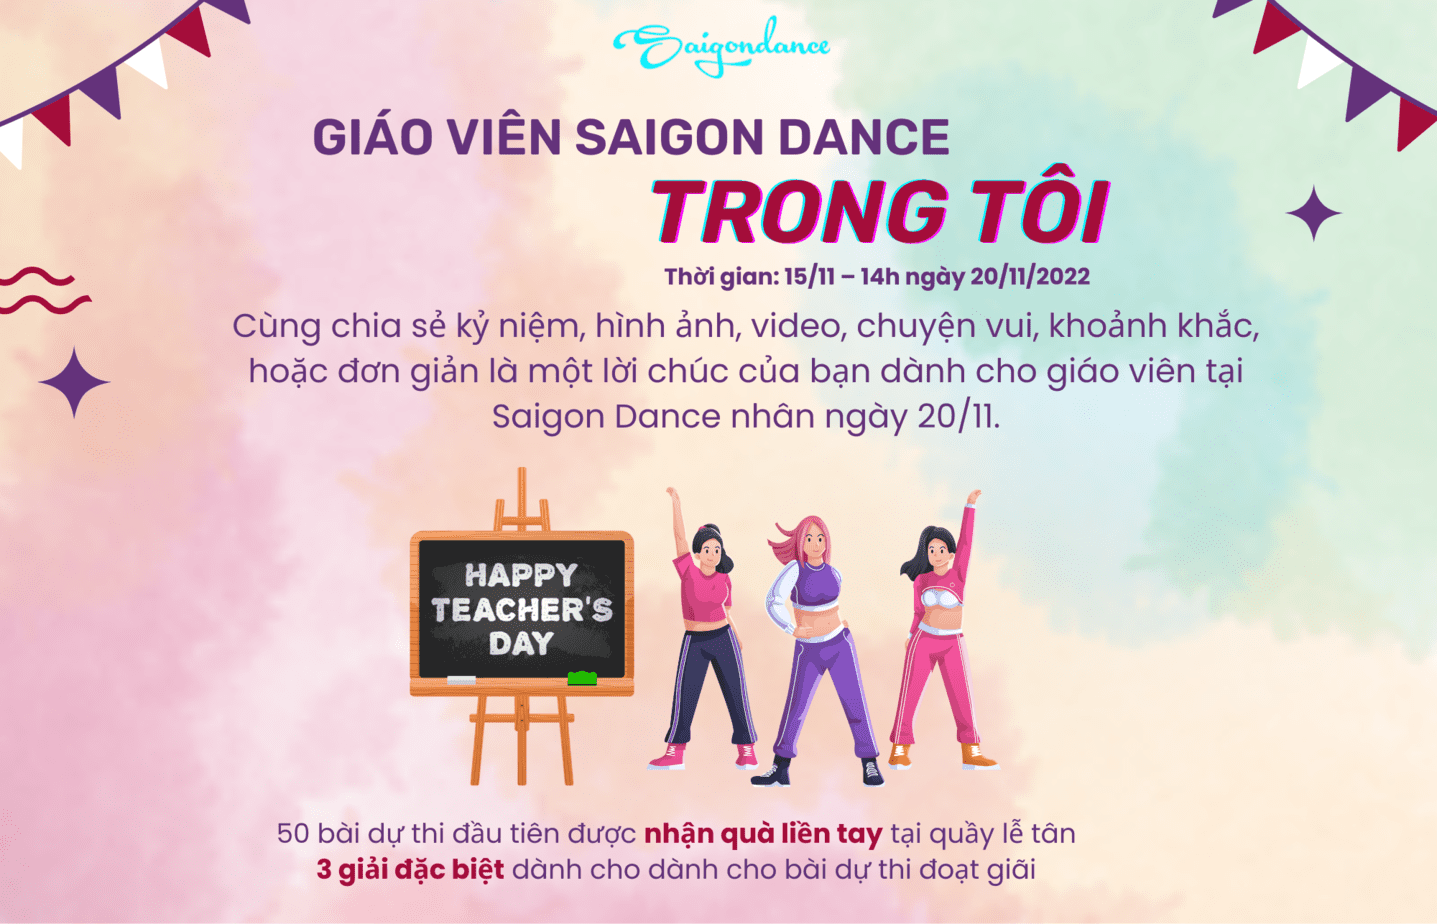 Nhận quà liền tay cùng Cuộc thi "Giáo viên Saigon Dance trong tôi" 19